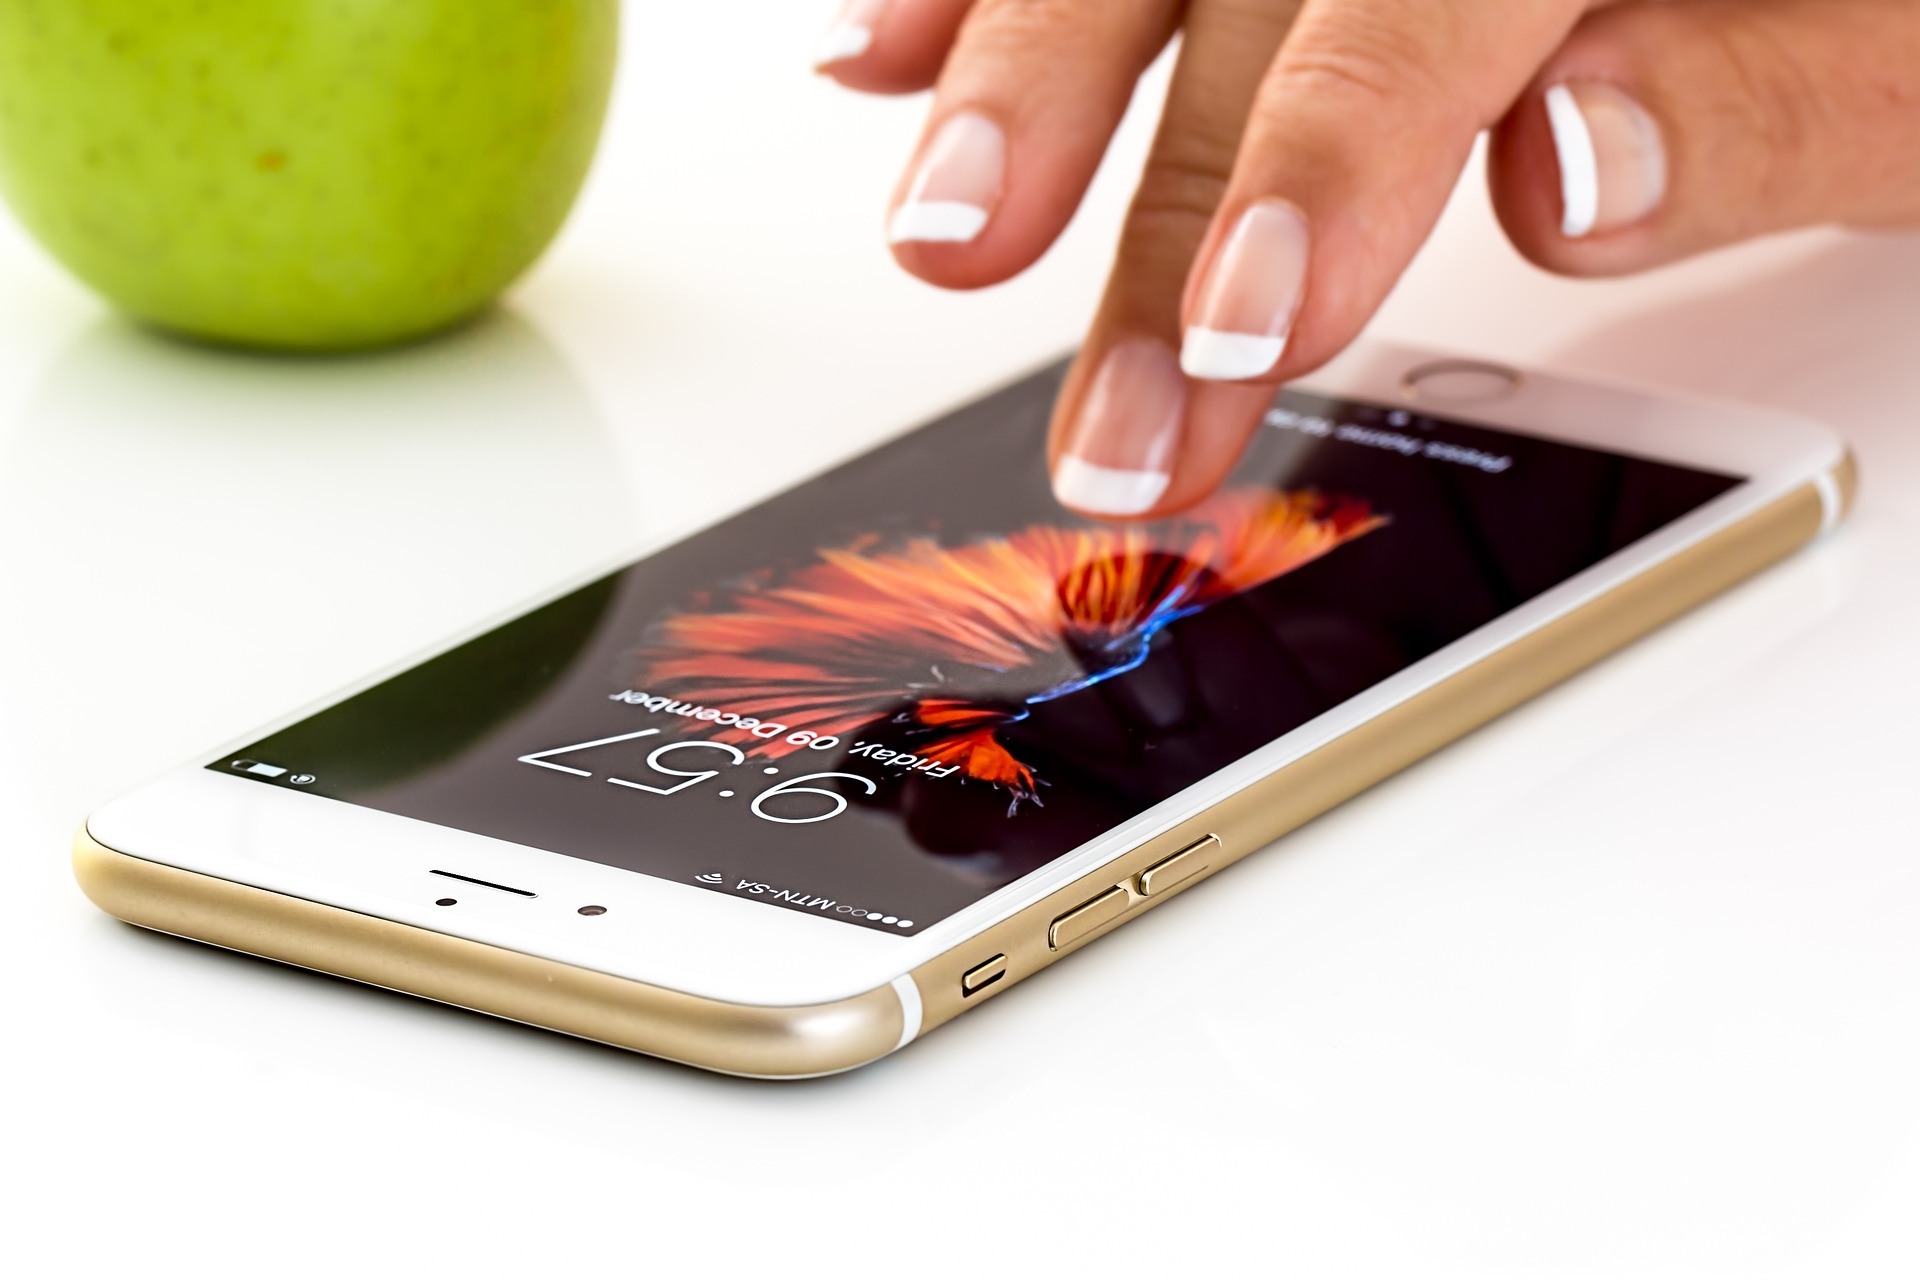 Mão, com unhas pintadas em "francesinha", mexendo em um celular com uma maçã verde ao fundo.